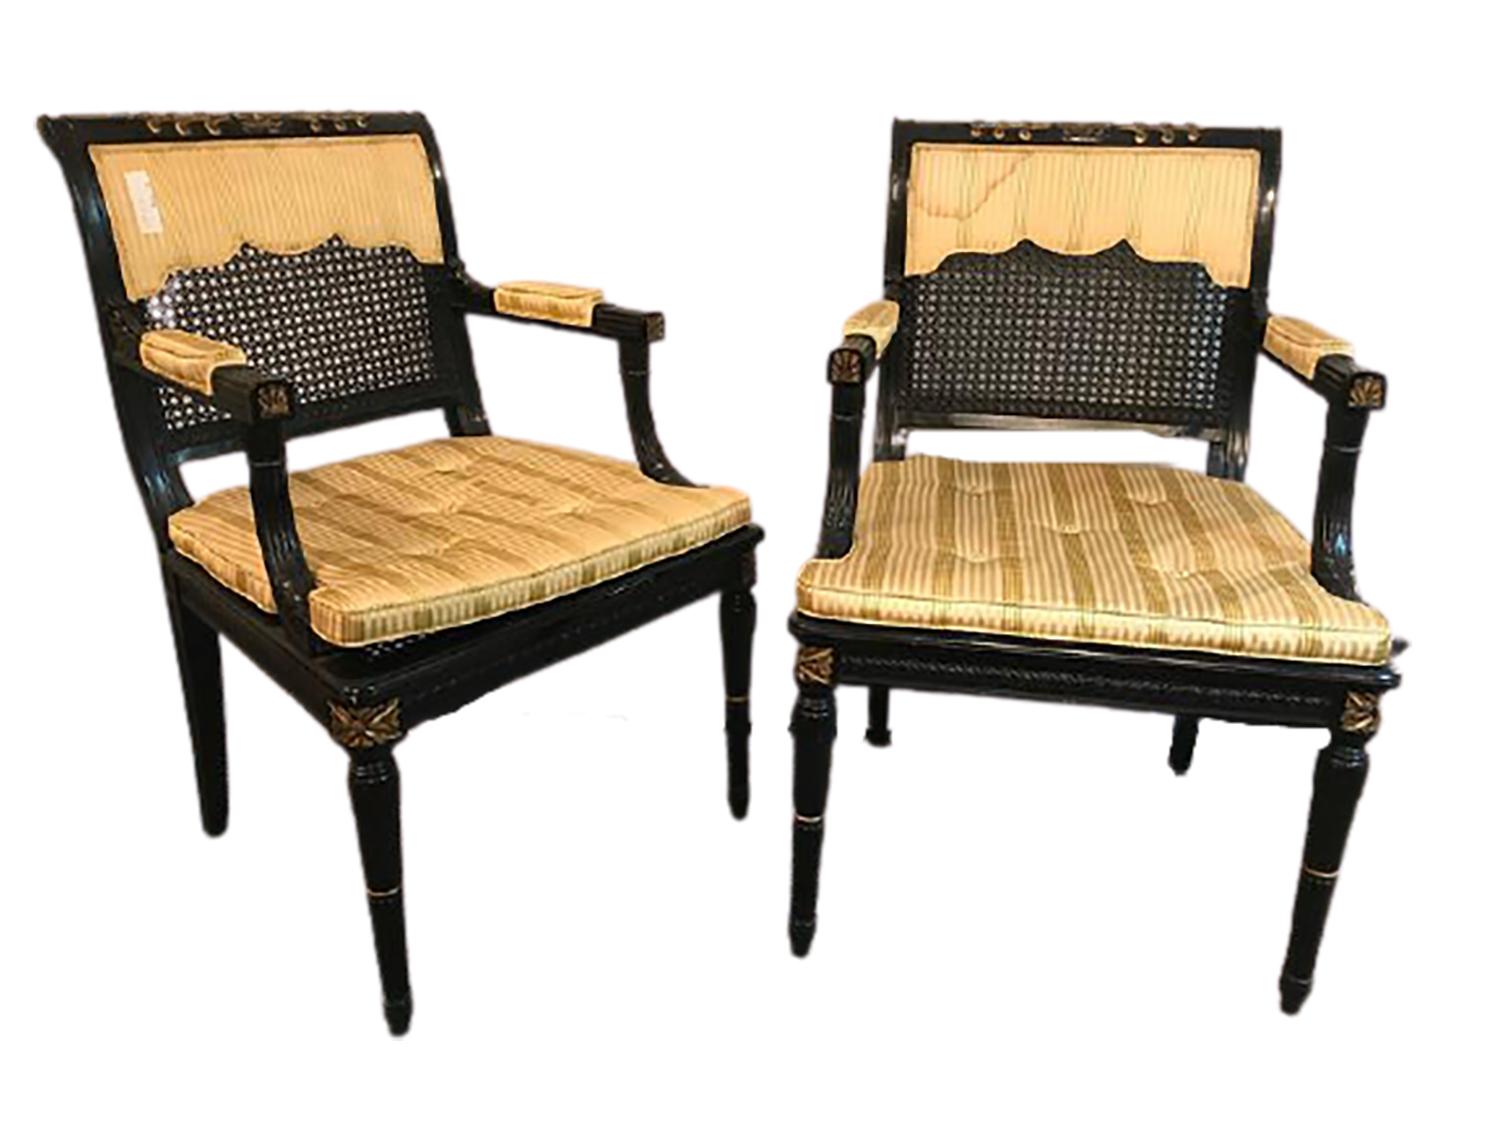 Paire de fauteuils à dossier en rotin noir et or, Fauteuils attribués à Maison Jansen. Chaque cadre ébonisé est orné de hautes lumières décoratives en or fin. La paire a des sièges à coussin avec des dossiers recouverts d'une draperie (l'un avec une